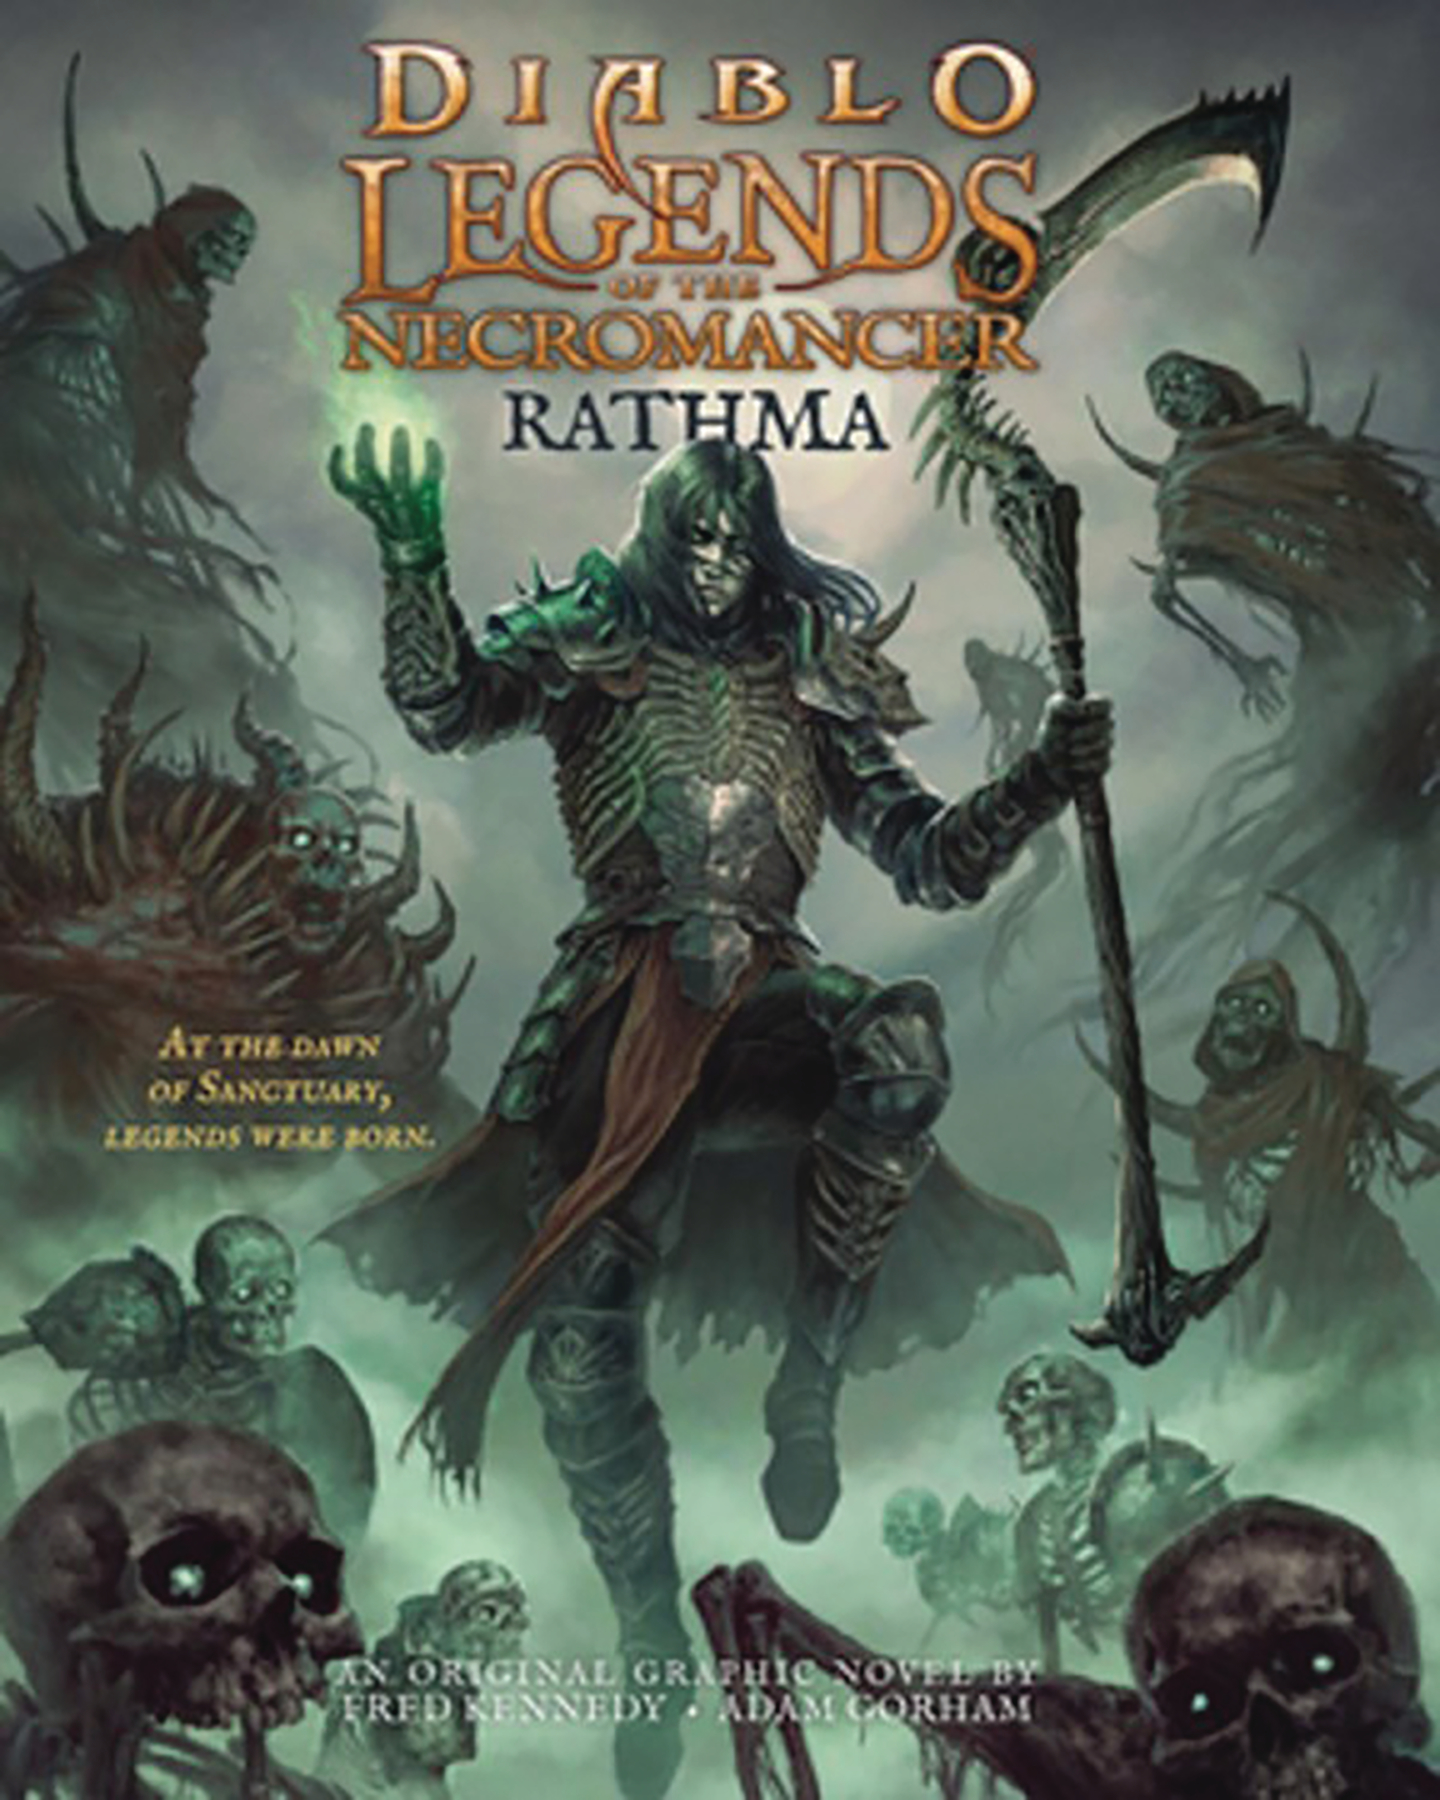 Diablo Legends of the Necromancer Graphic Novel Rathma